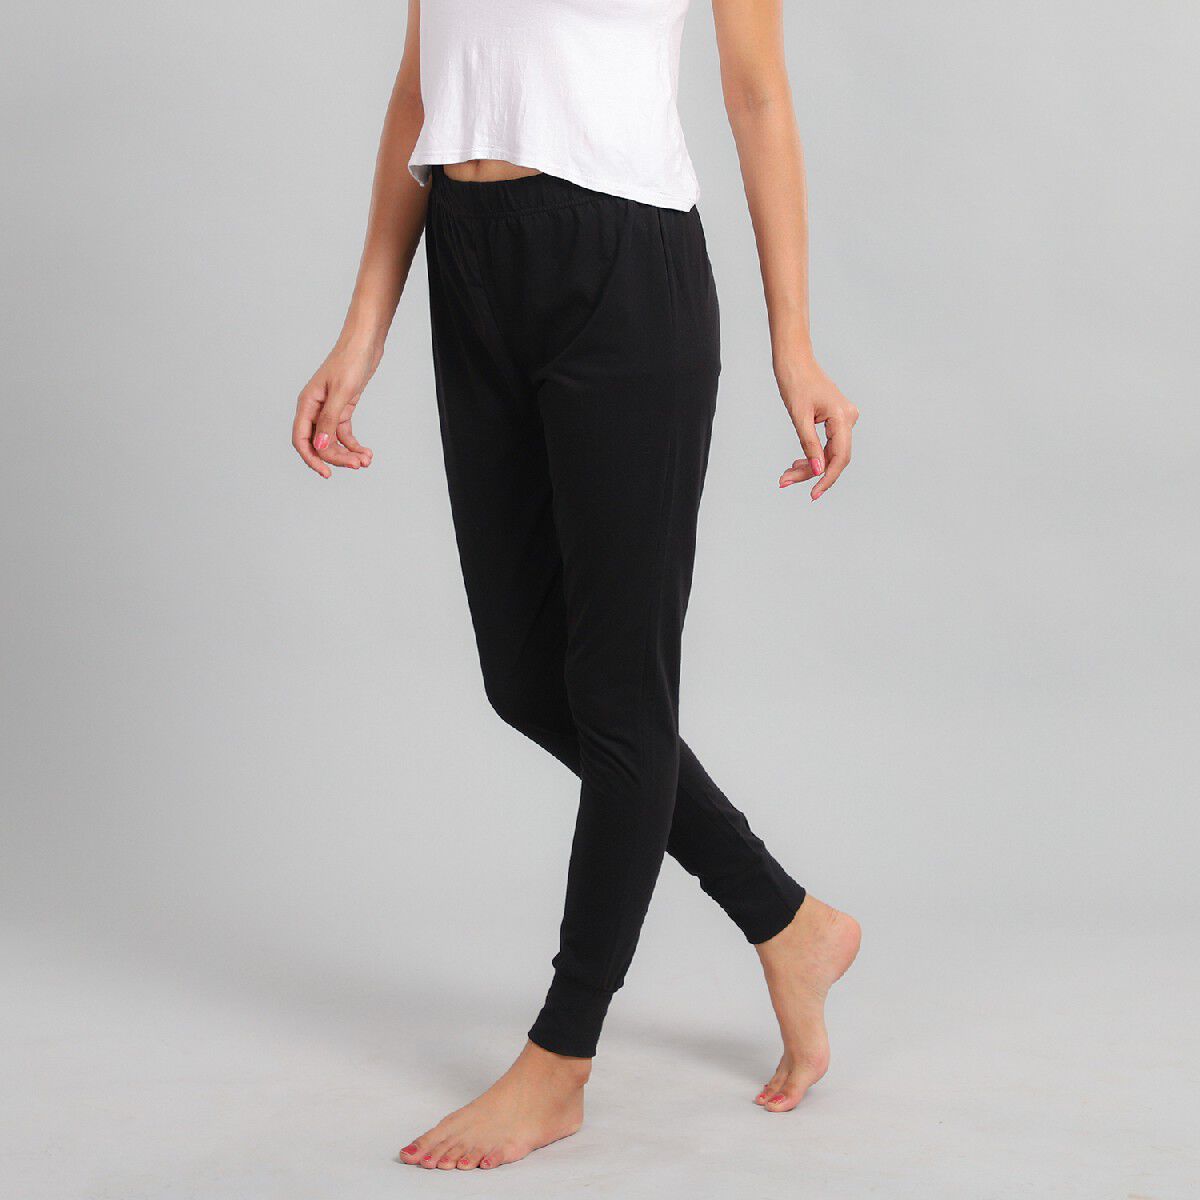 Jack Wills Women's Leggings UK 8 Black 100% Cotton Full length | eBay